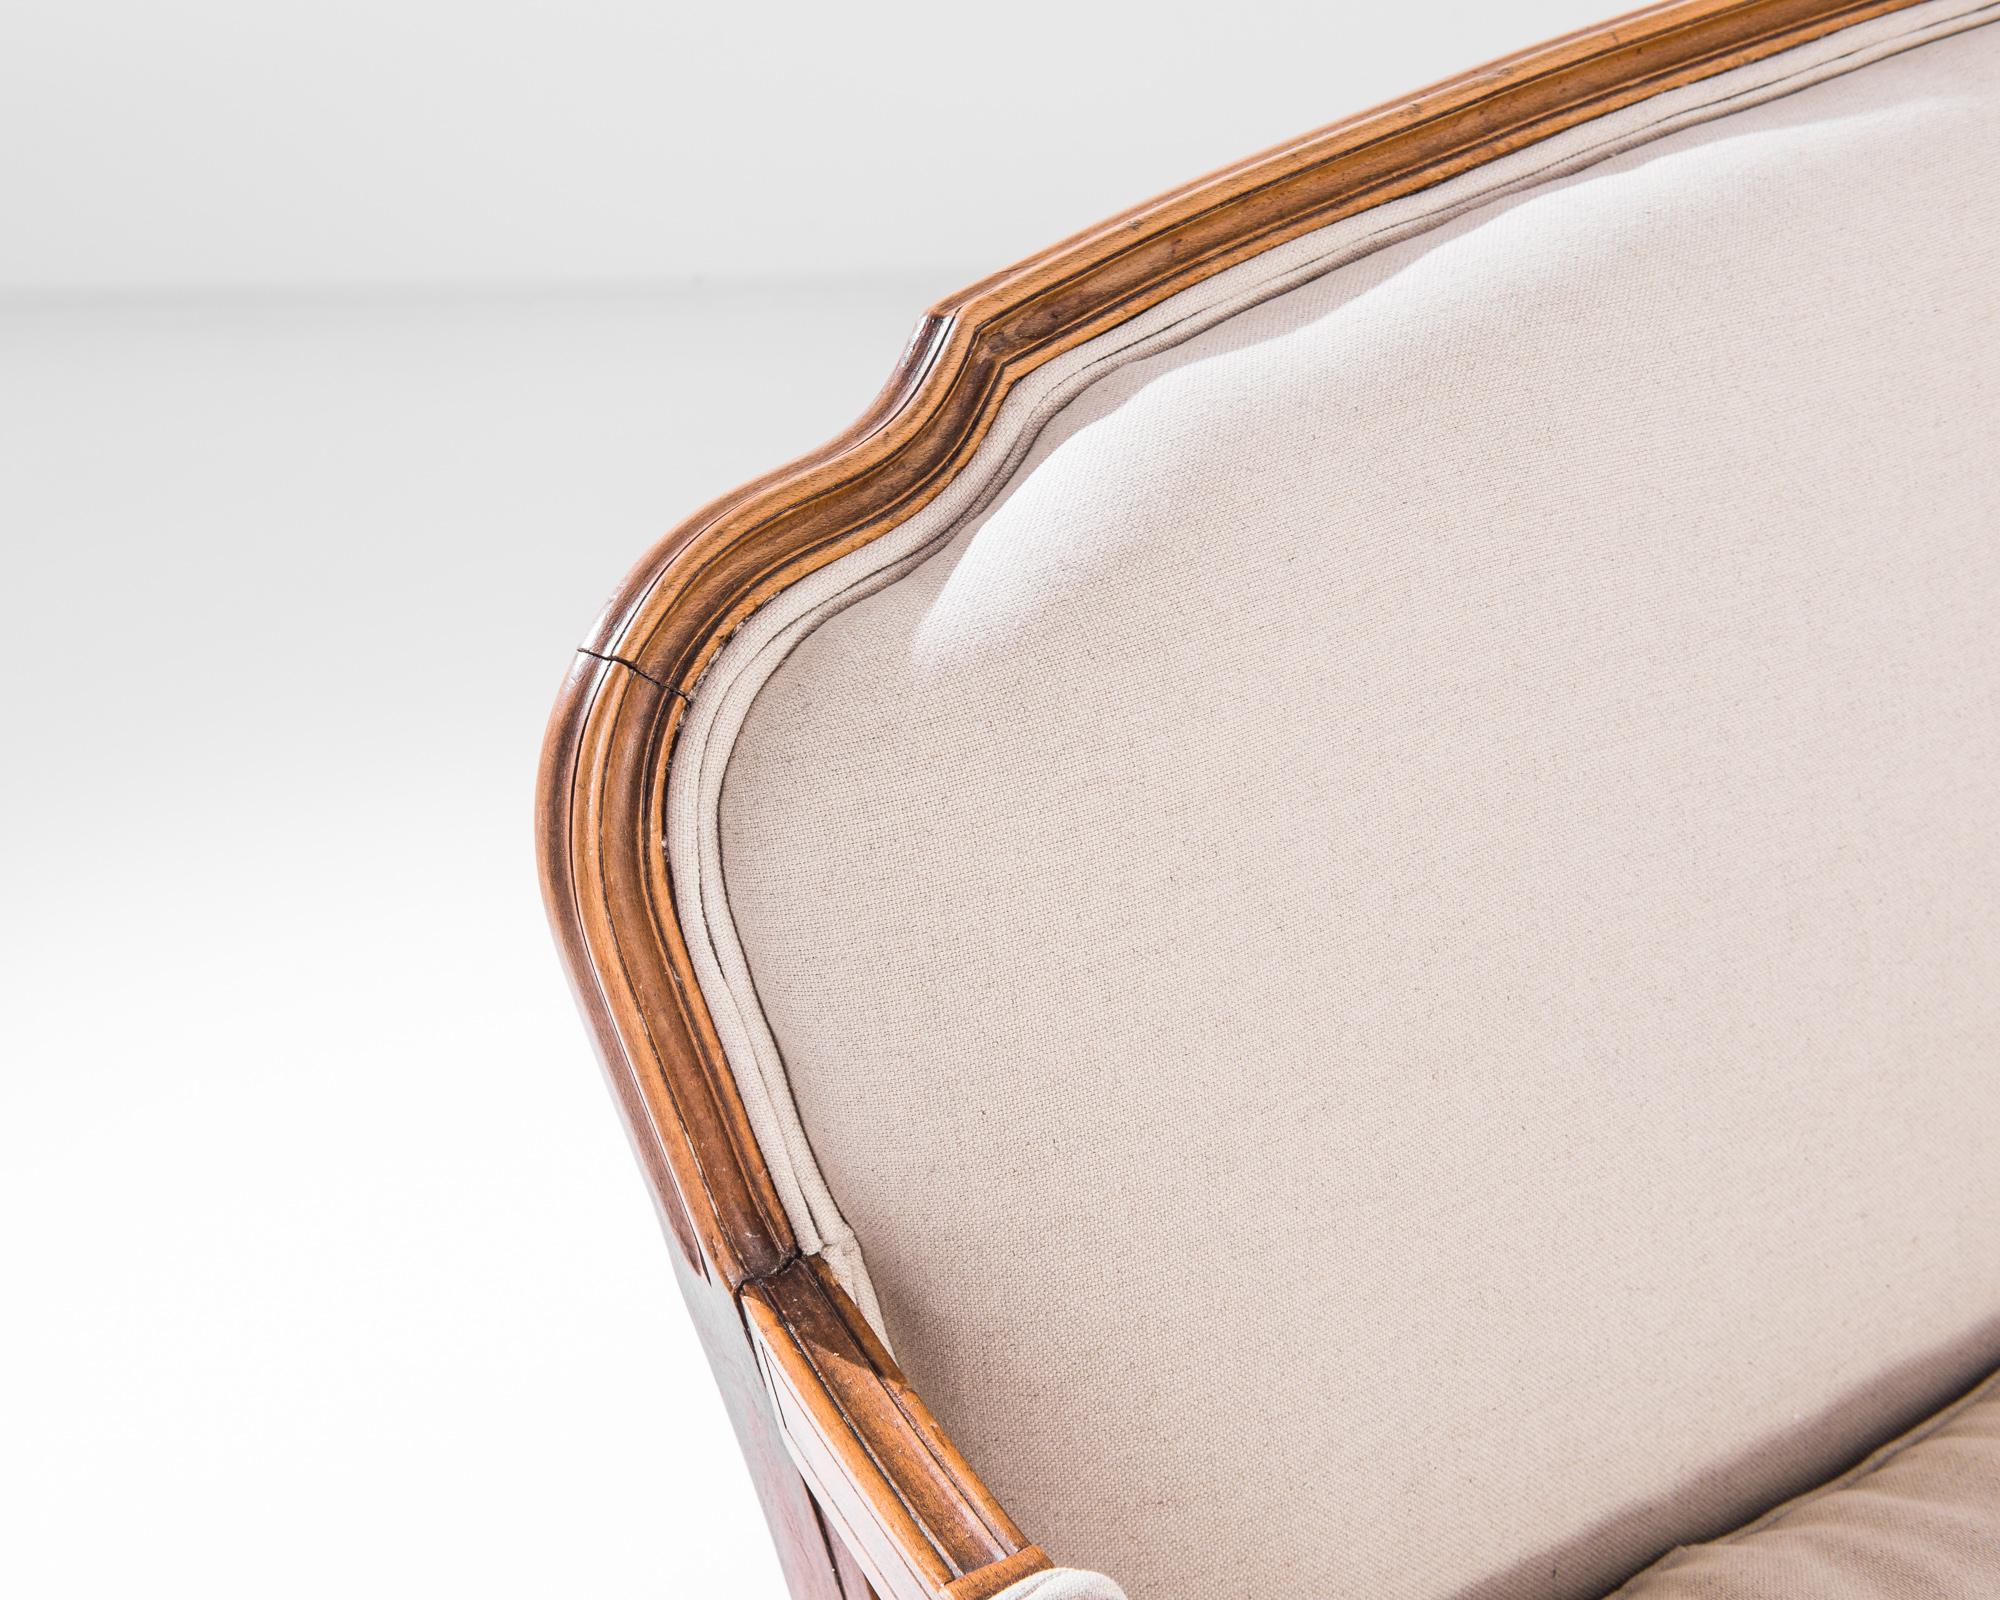 Barocke Kurven und französisches Schilfrohr verleihen diesem Sofa eine angeborene Leichtigkeit und Anmut. Der in den 1960er Jahren in Frankreich hergestellte Stuhl mit klassischer Cabriole-Silhouette bietet einen großzügigen und eleganten Sitz. Die